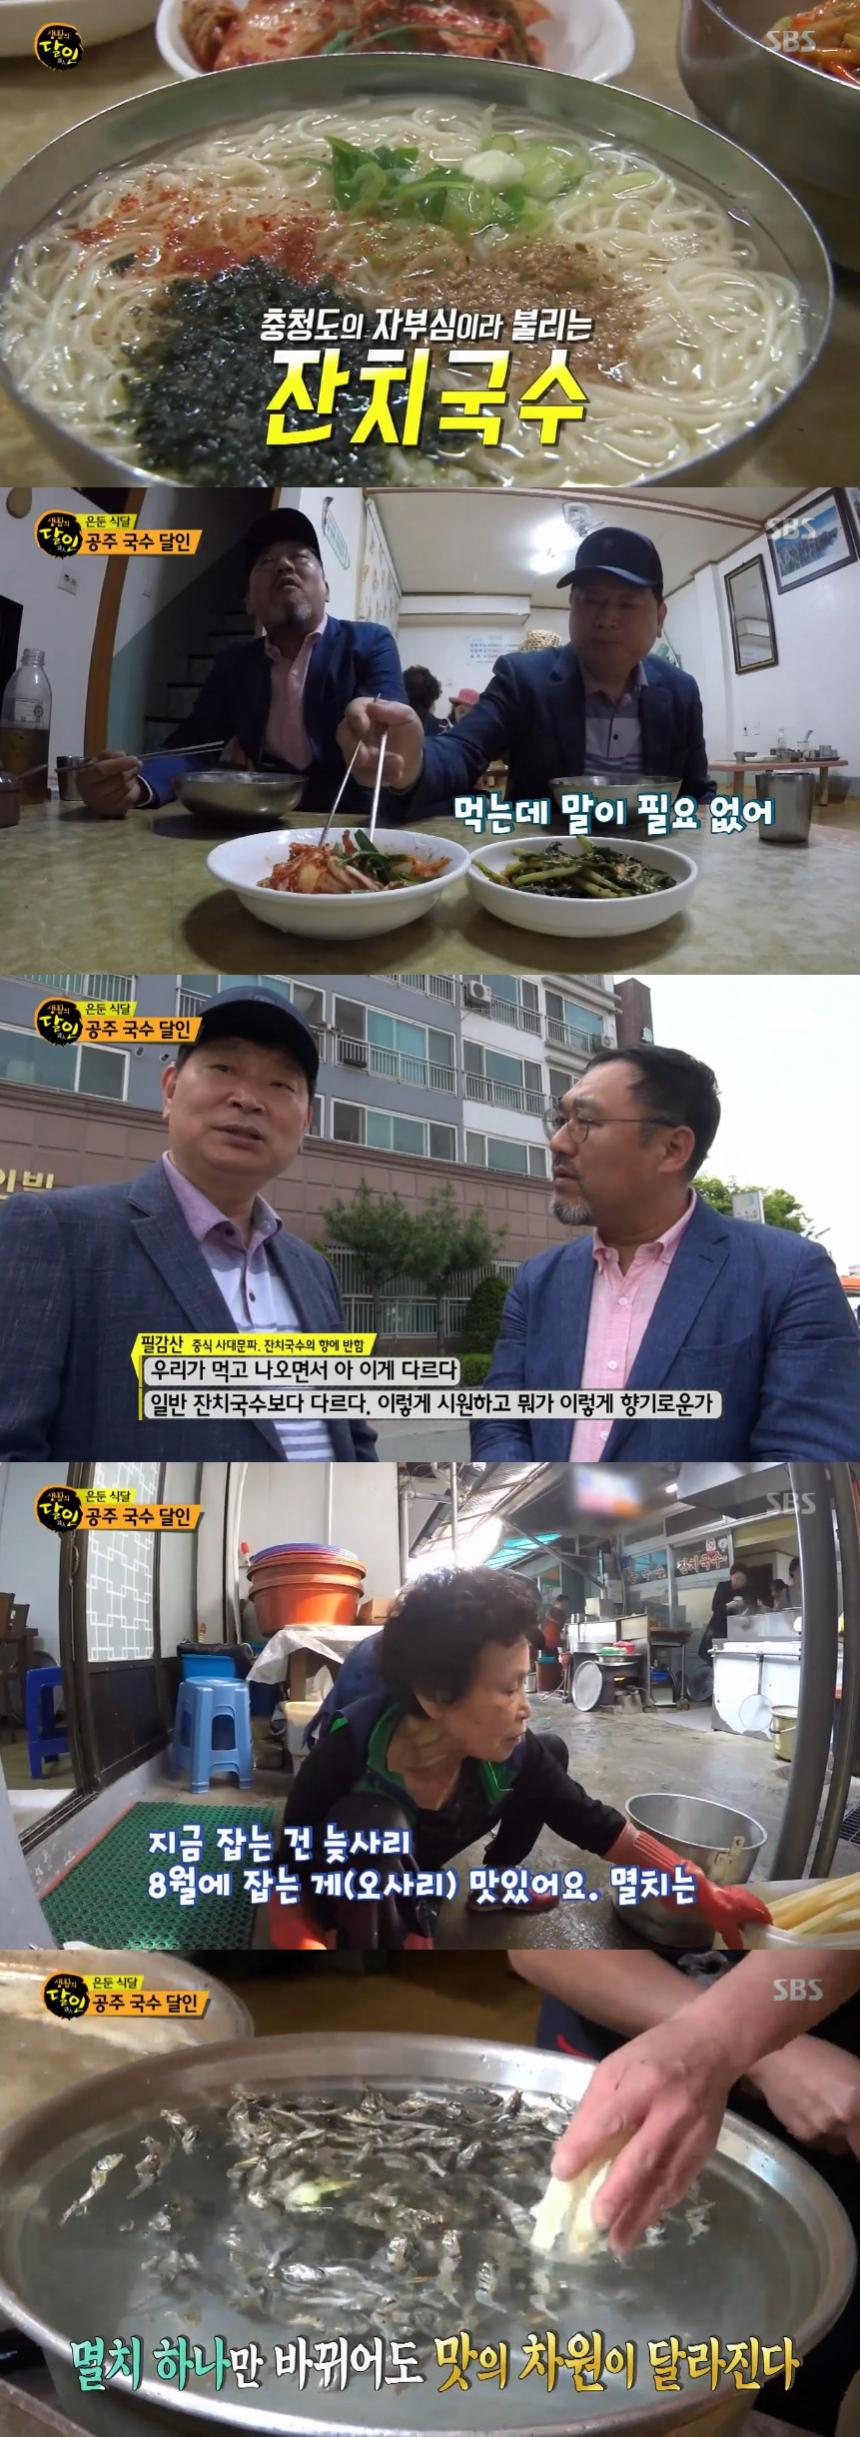 SBS ‘생활의 달인’ 캡처